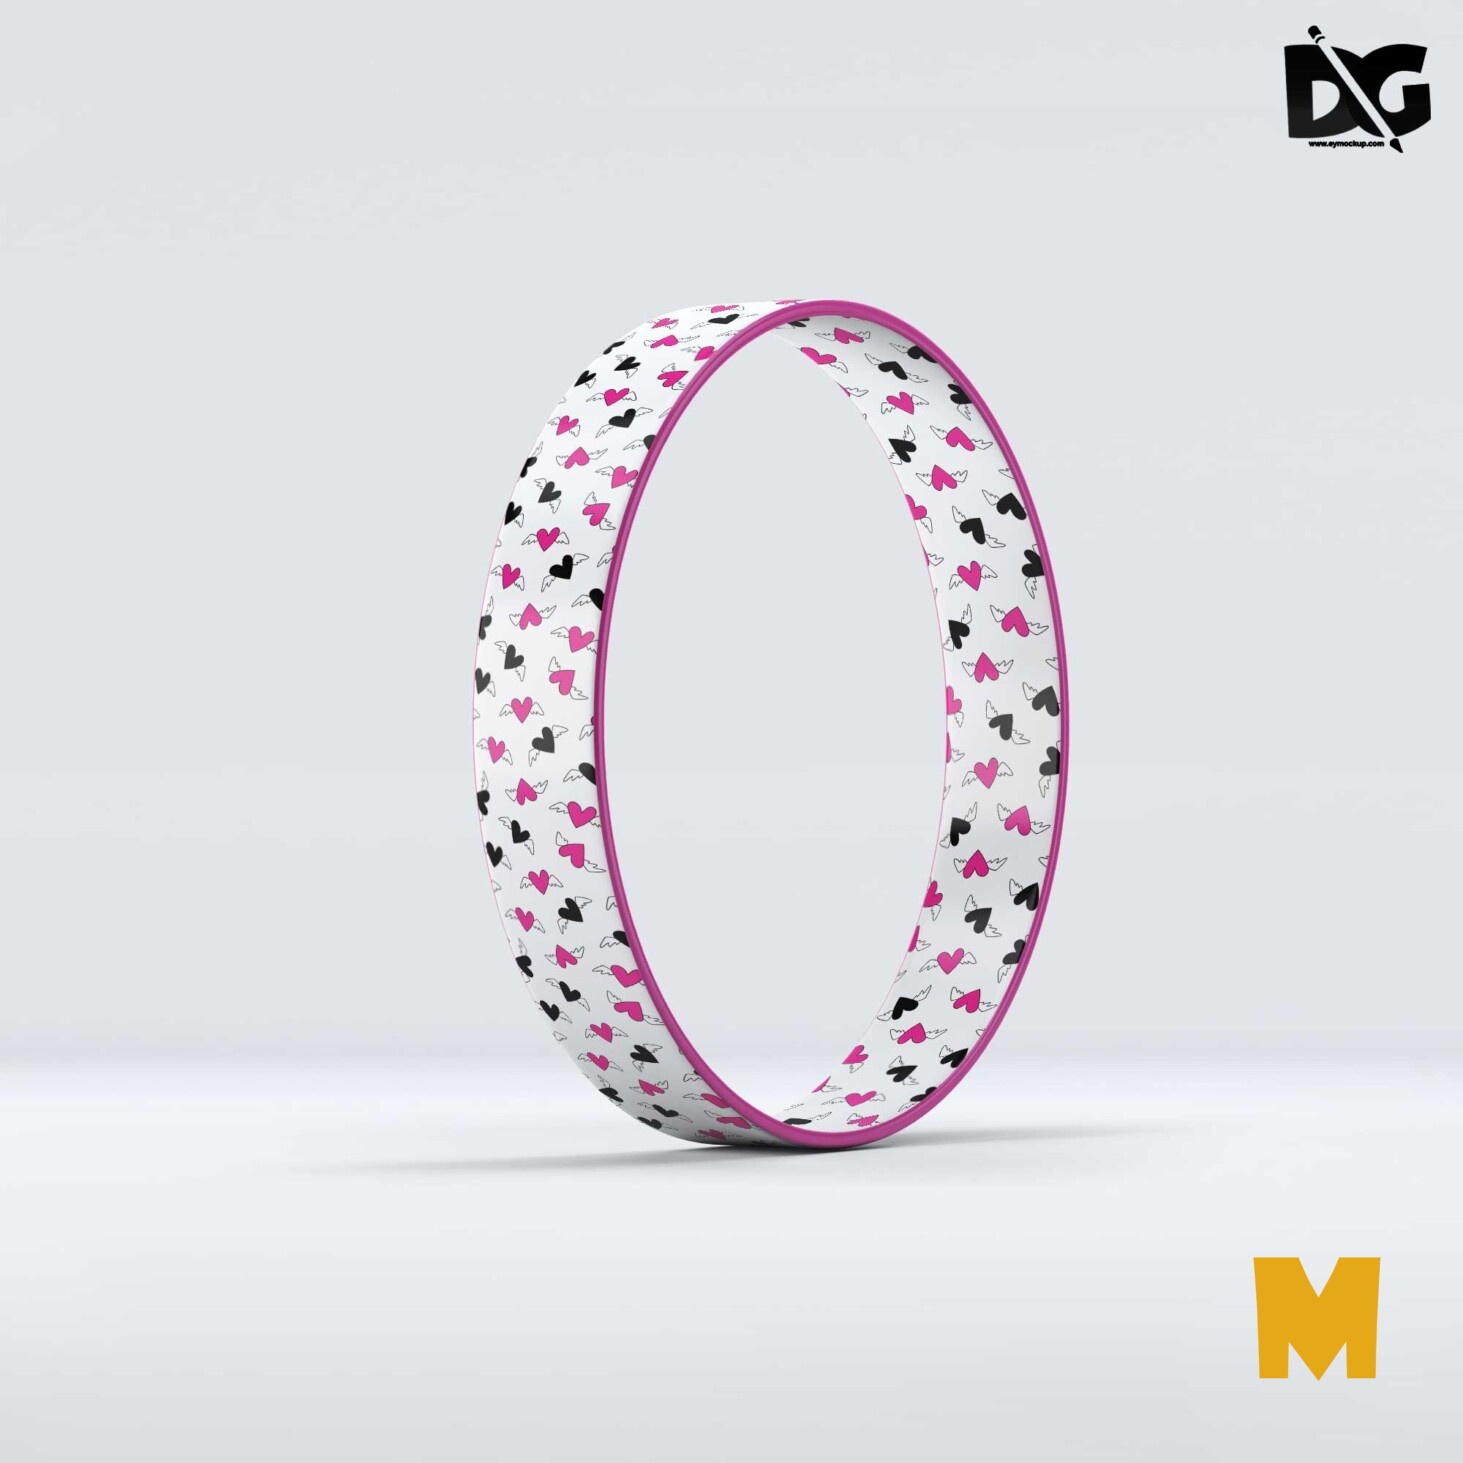 Design Wristband Mockup